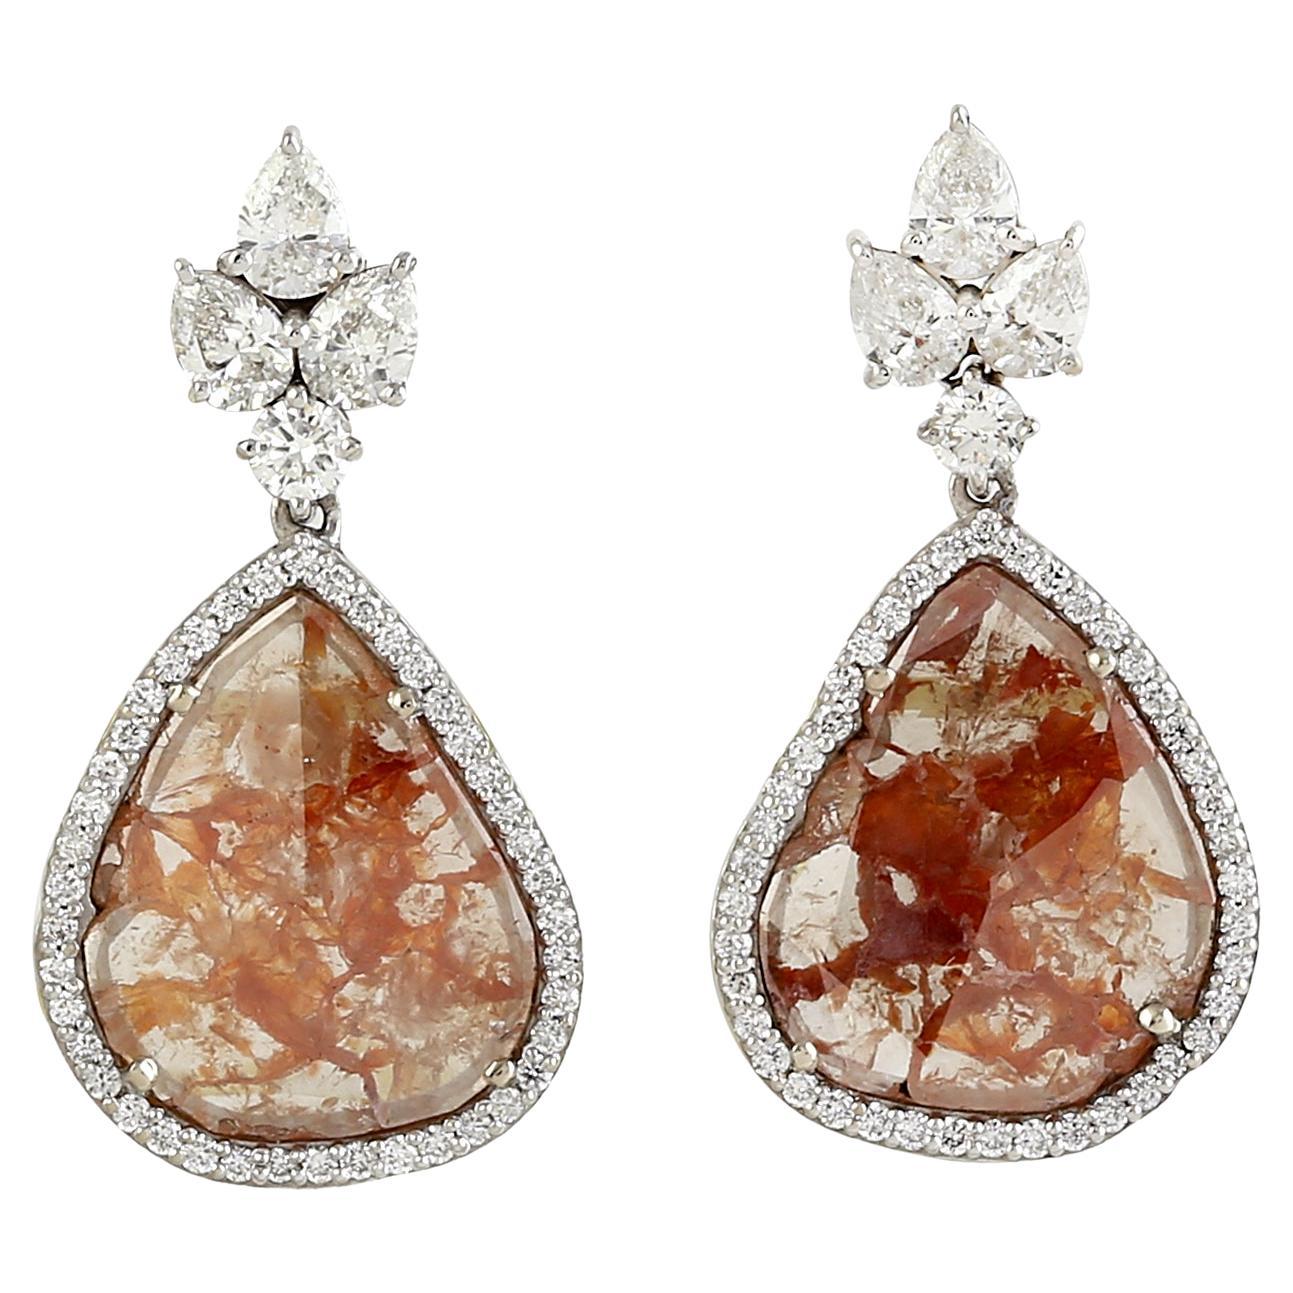 Boucles d'oreilles pendantes en or blanc 18 carats, diamants de glace taillés en tranches de forme irrégulière